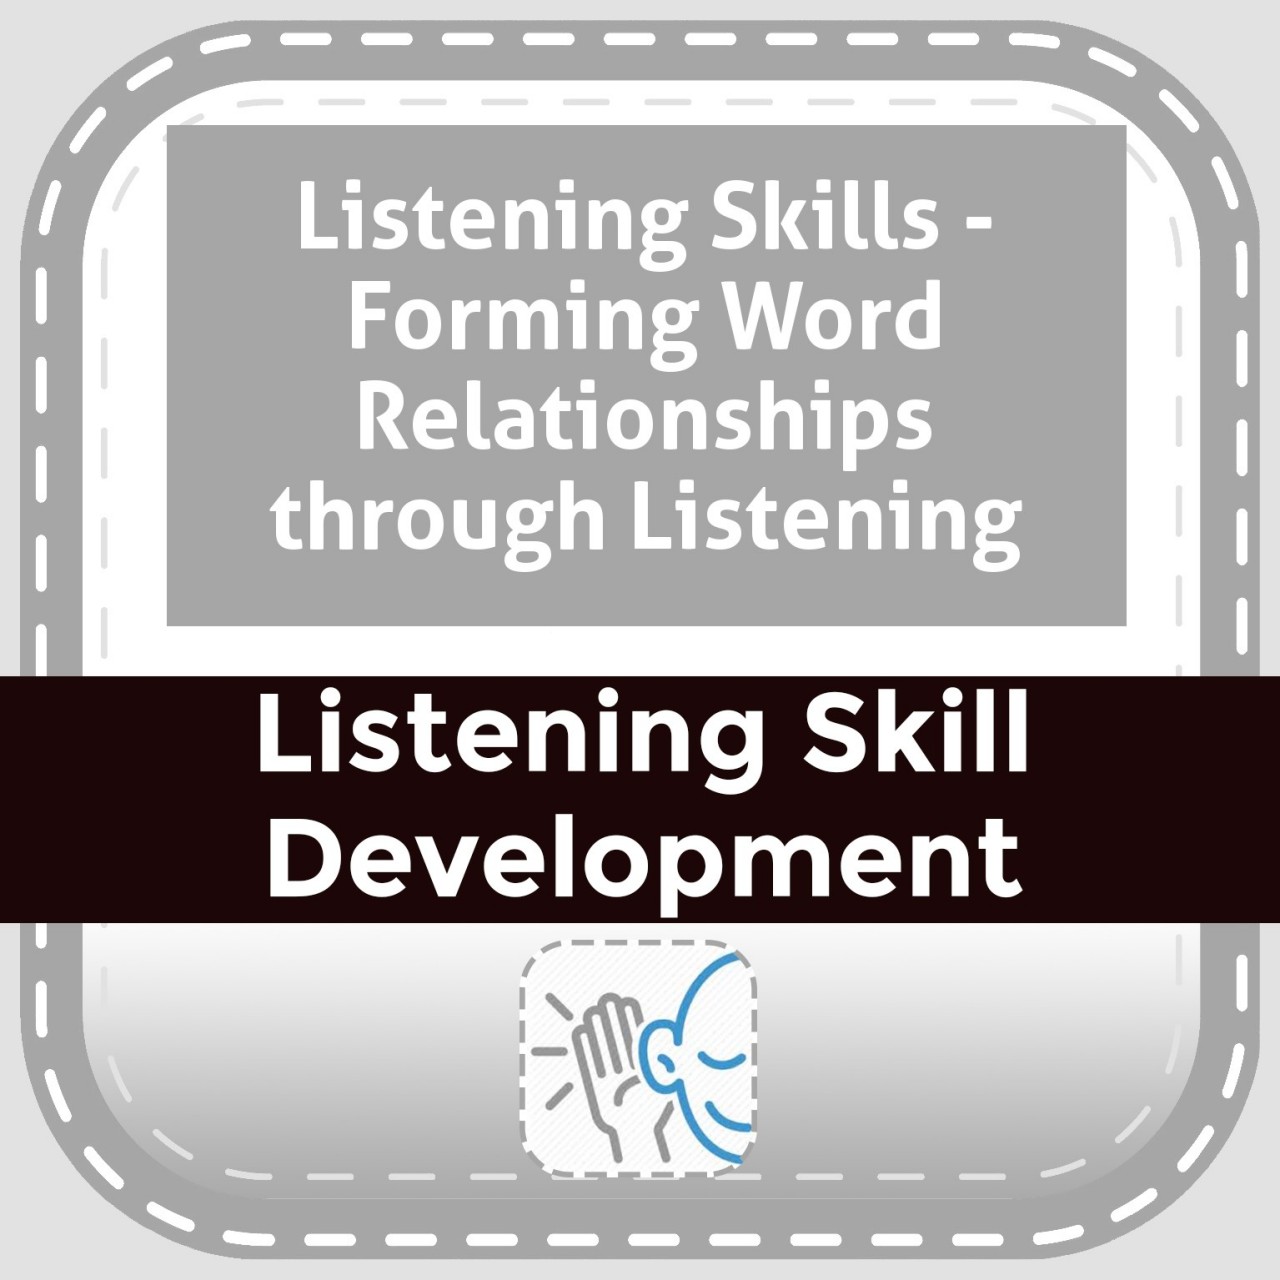 Listening Skills - Forming Word Relationships through Listening